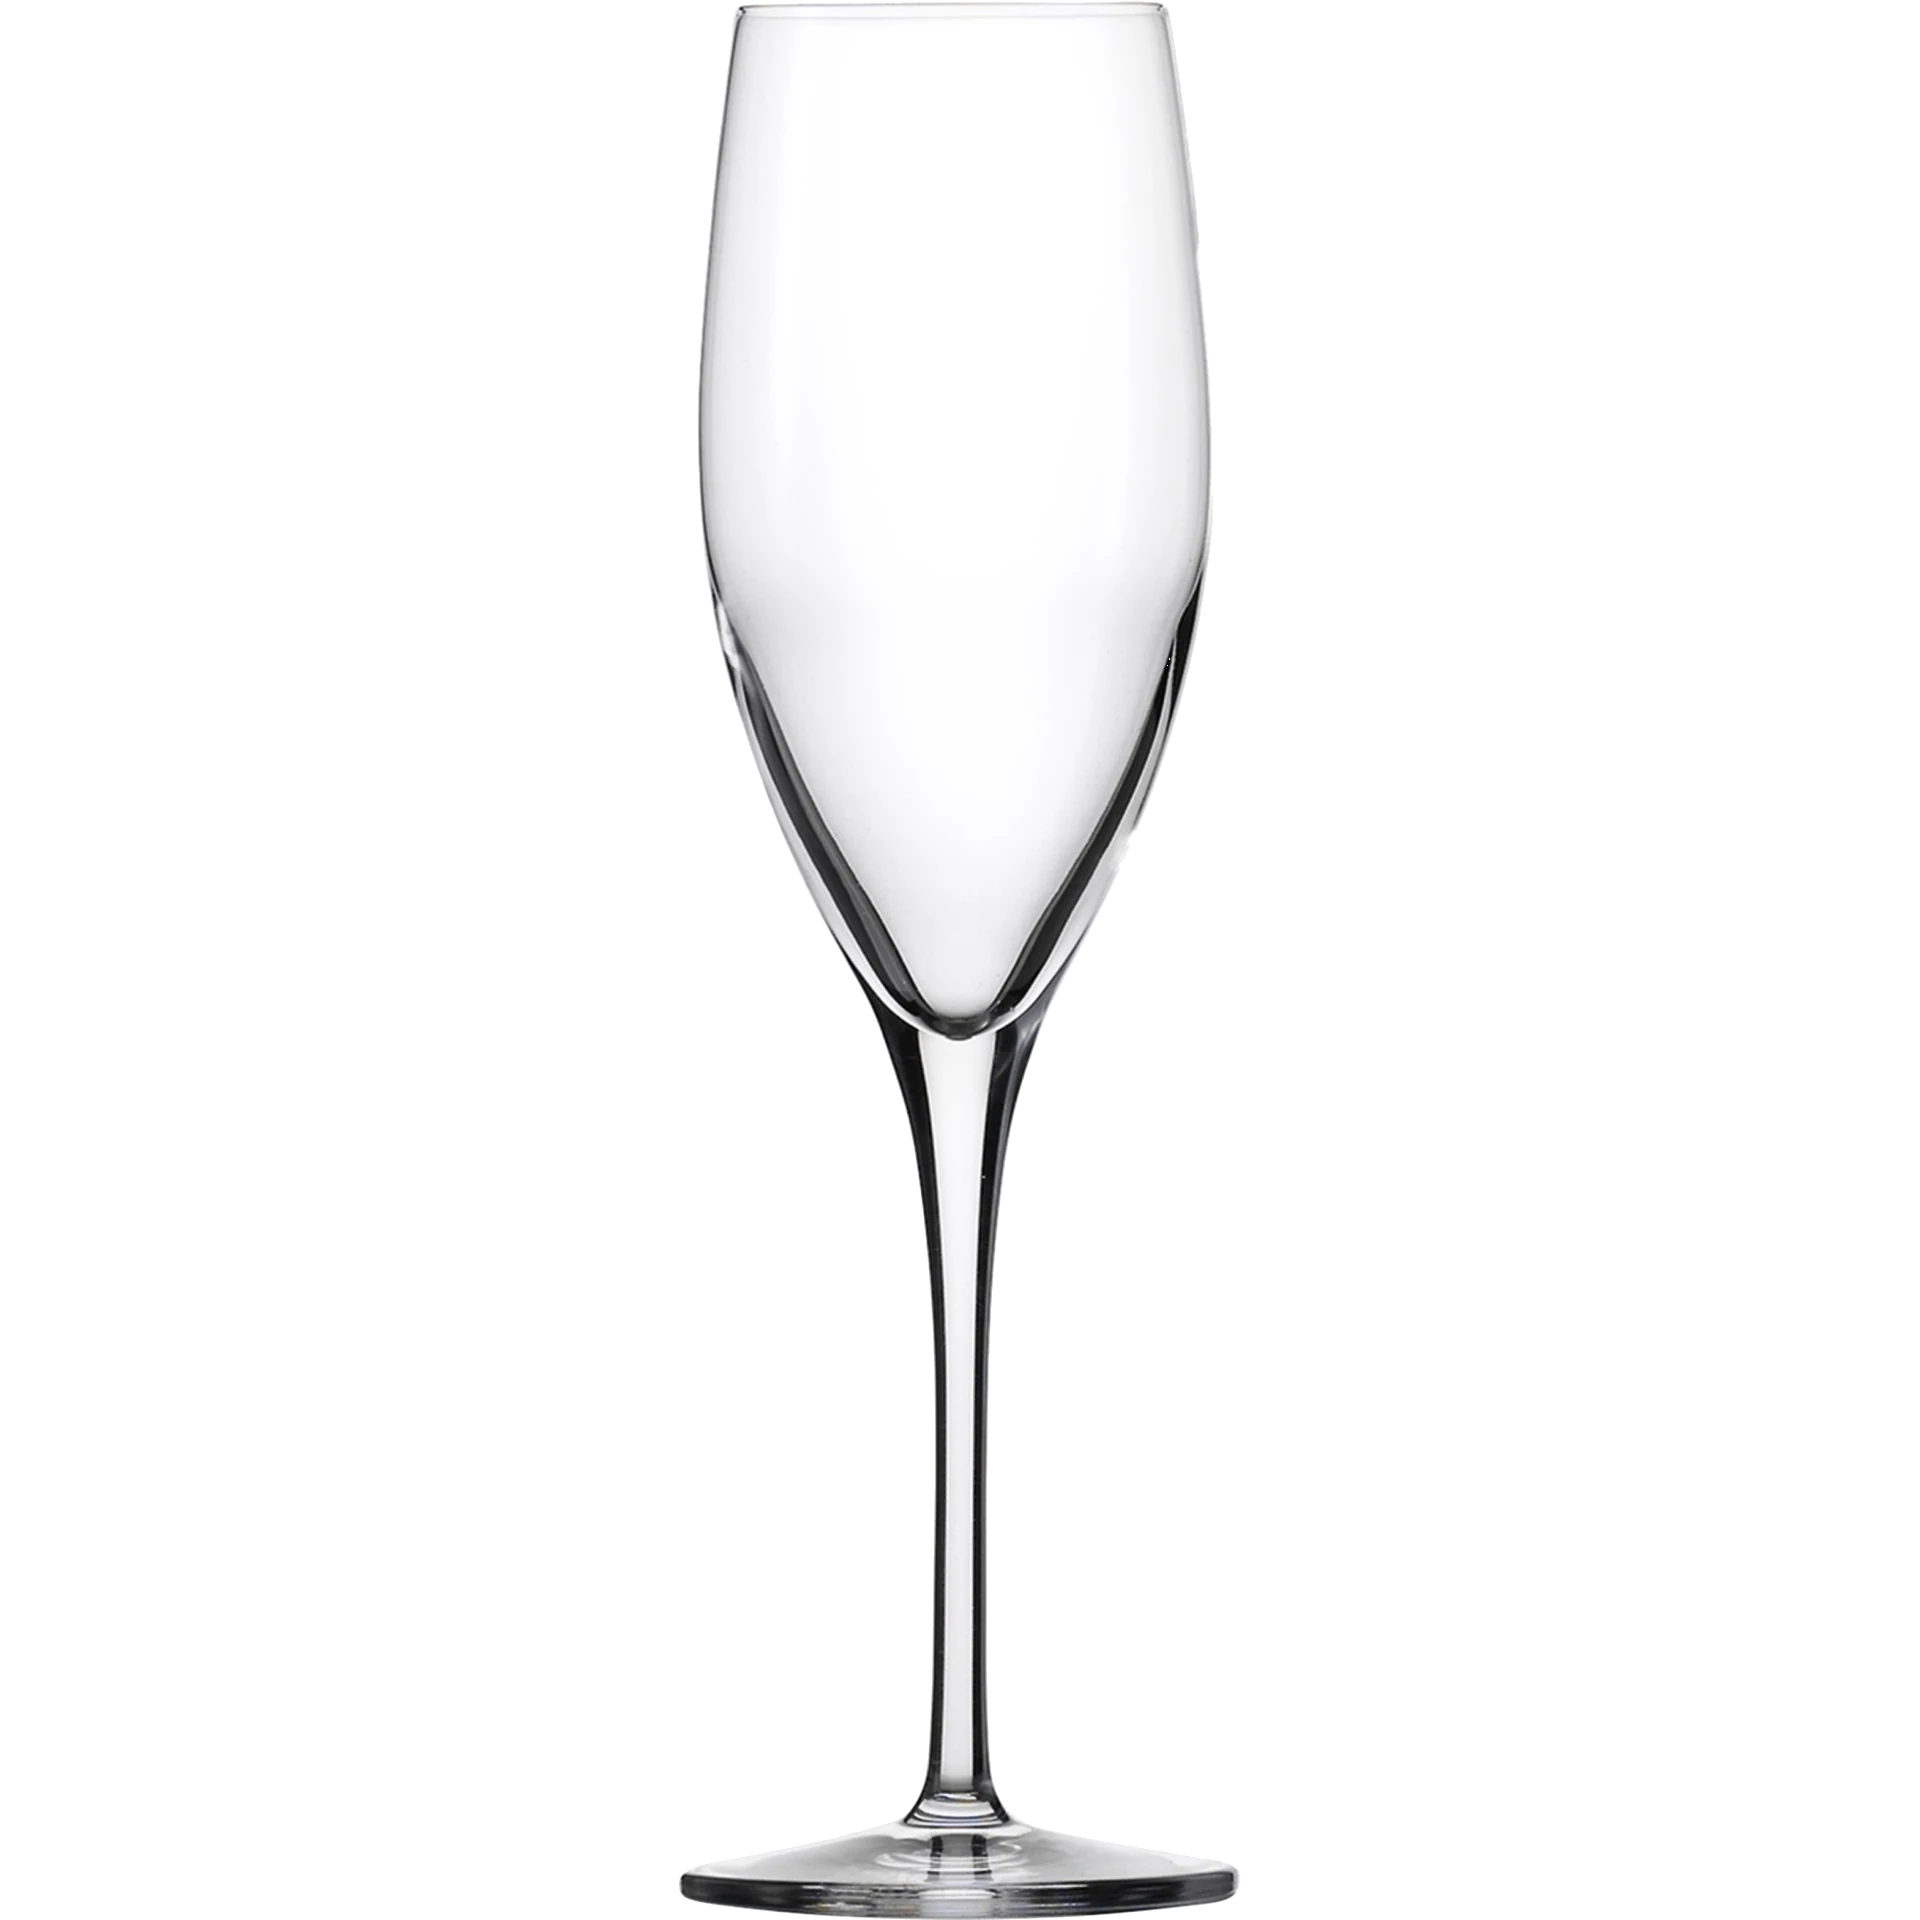 Eisch Champagnerglas Superior SENSISPLUS mit Moussierpunkt - 2 Stück im Geschenkkarton 500/71 Einzelglas